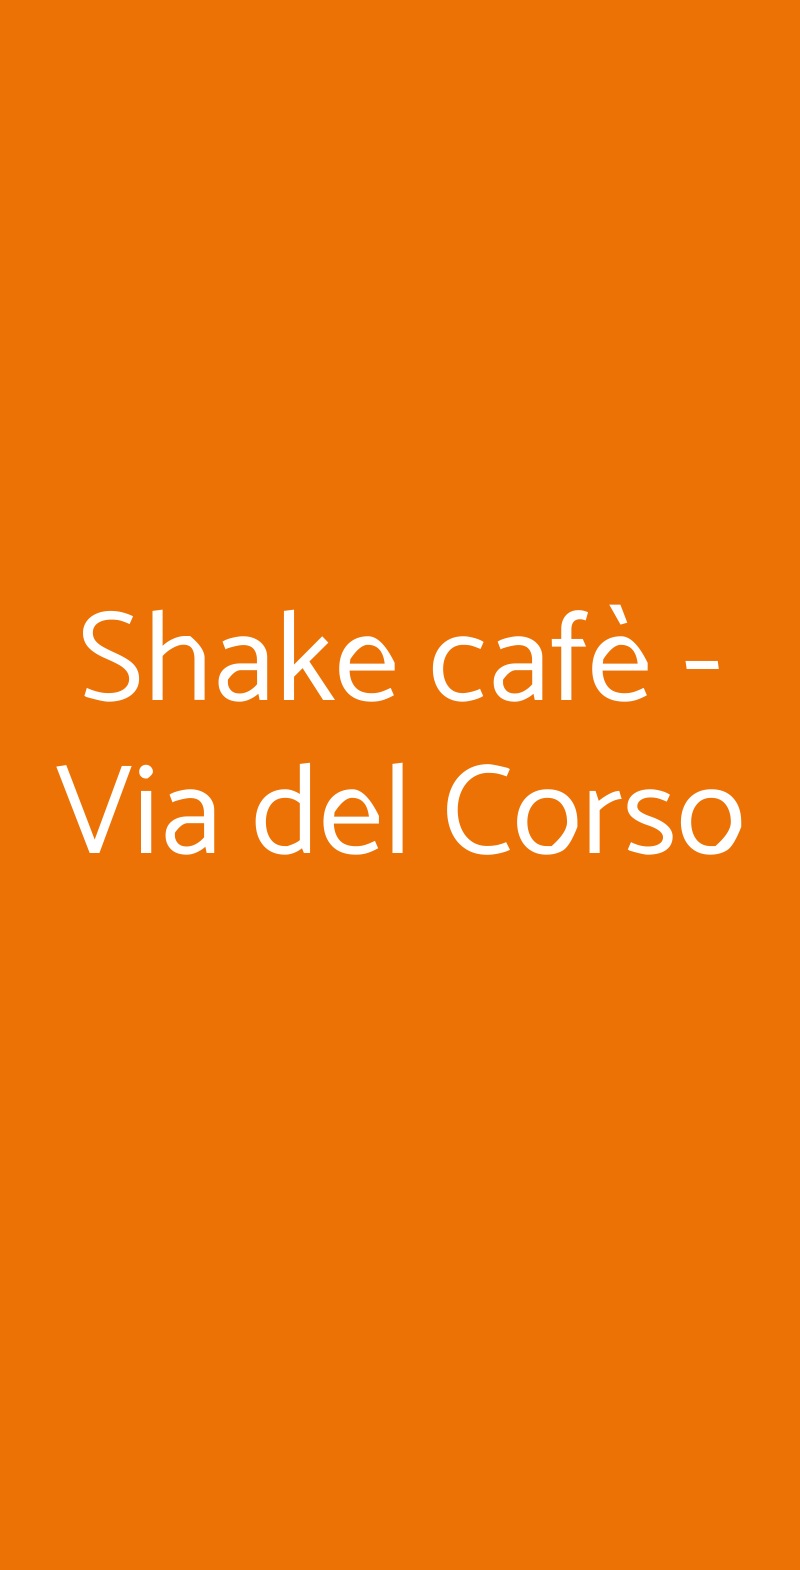 Shake cafè - Via del Corso Firenze menù 1 pagina